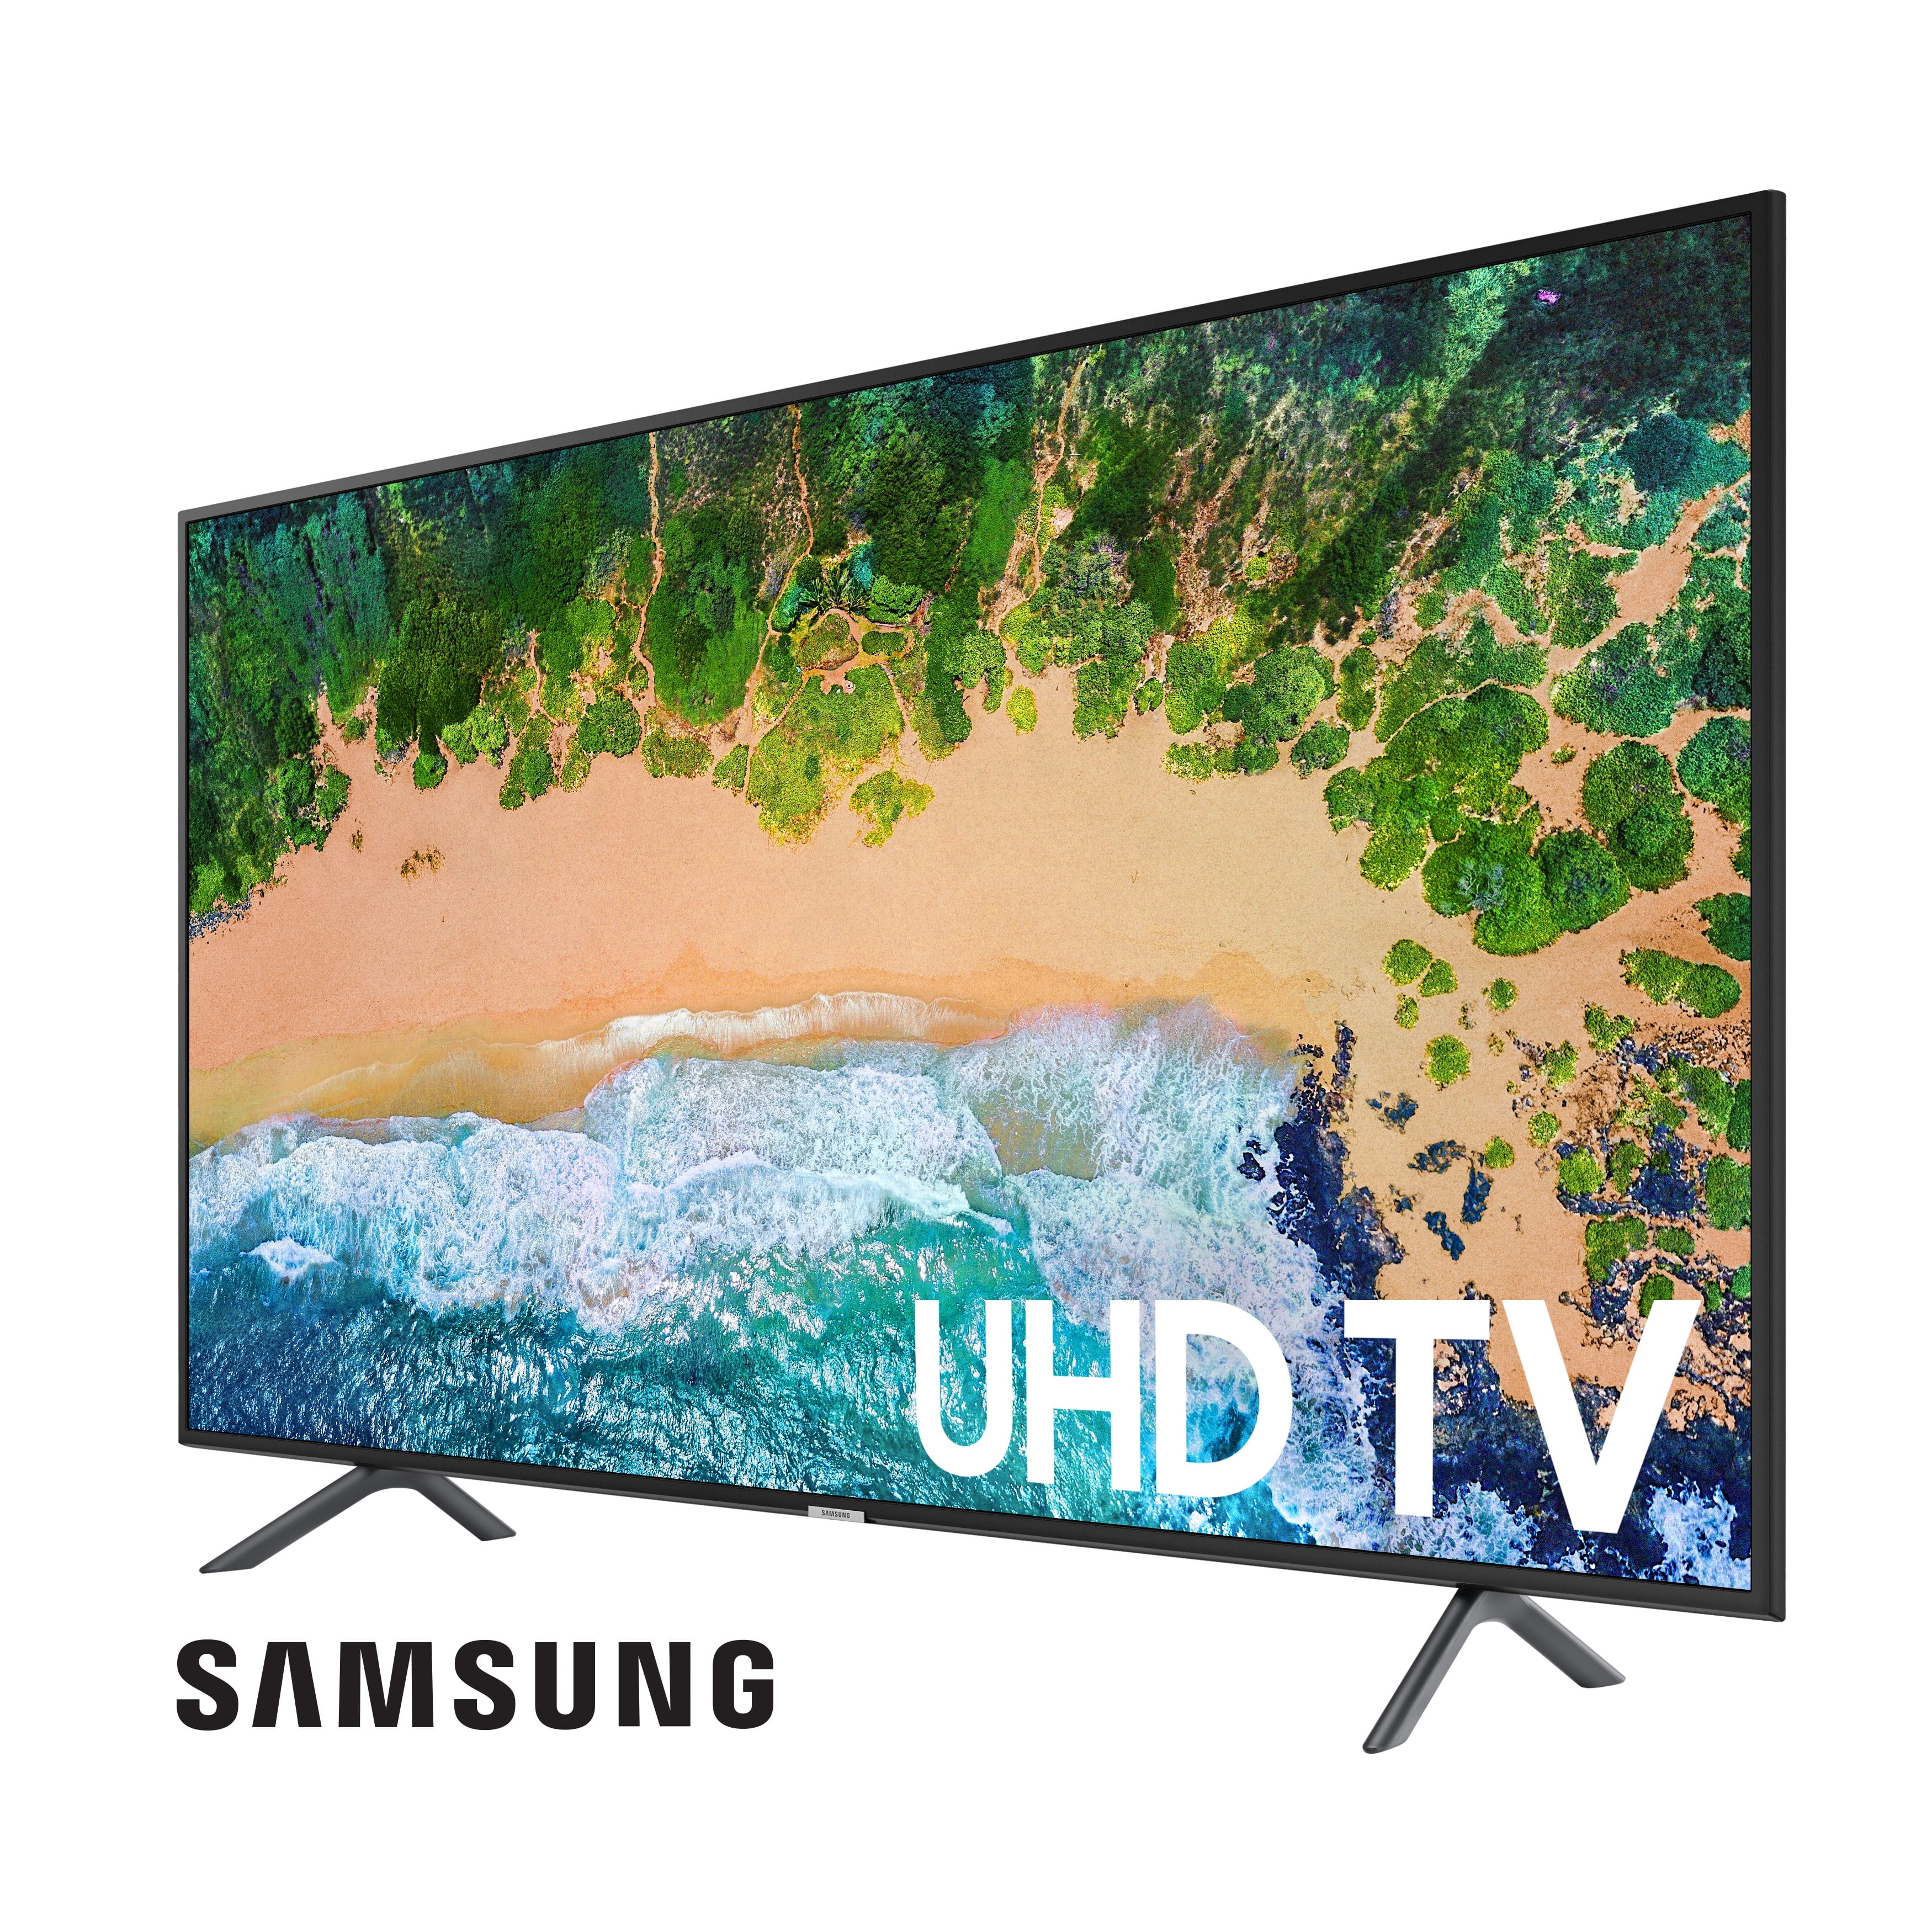 Samsung 75 Class 4k Uhd 2160p Led Smart Tv With Hdr Un75nu6900 Walmart Com Walmart Com